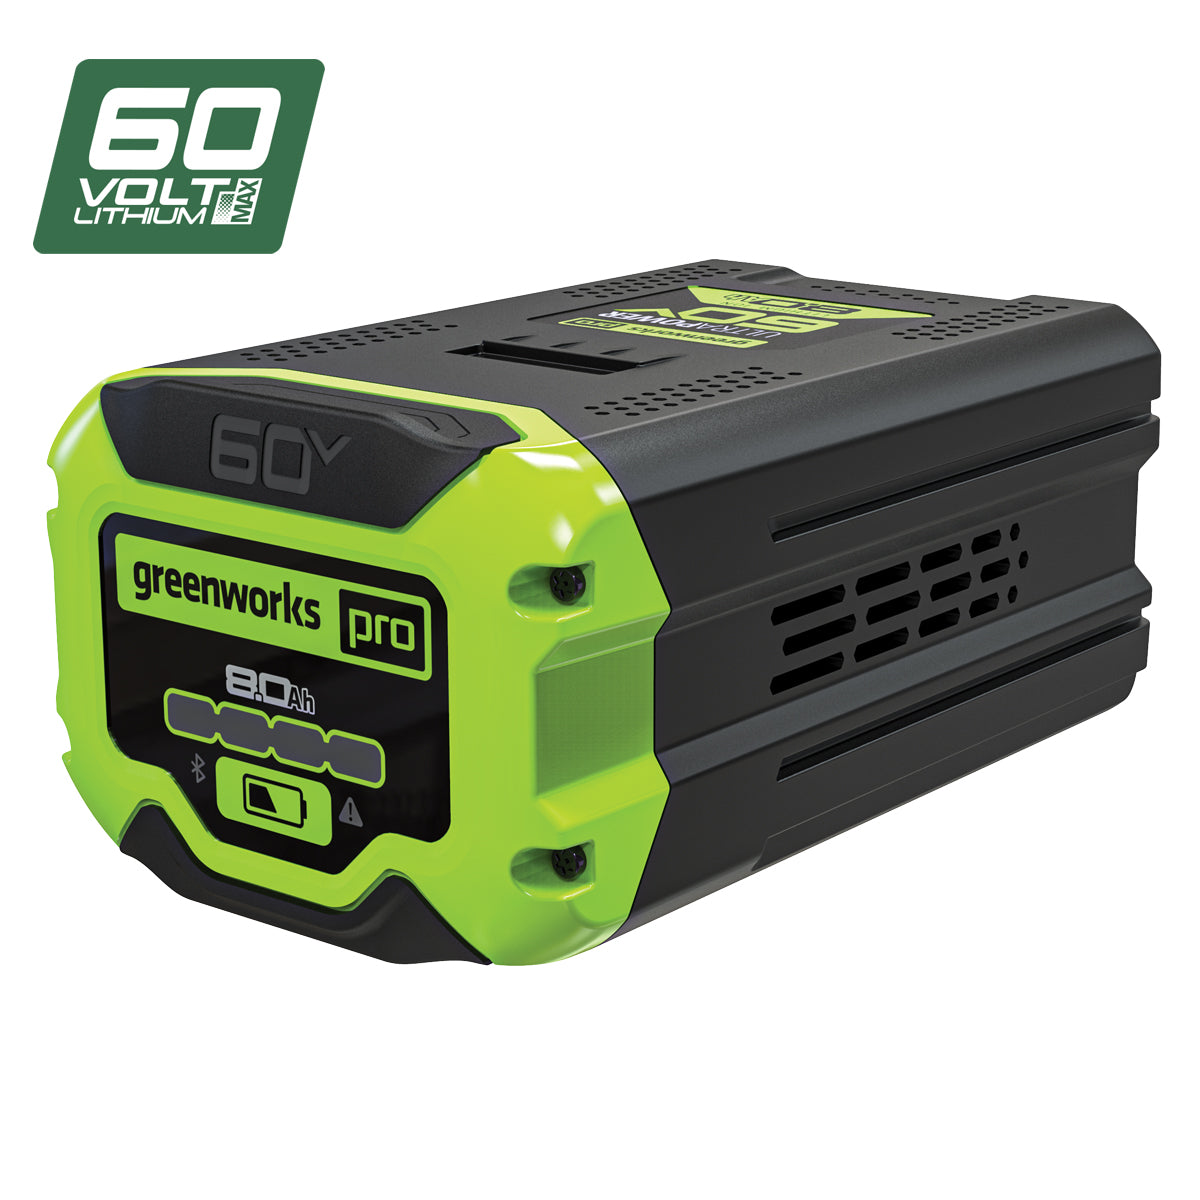 Greenworks 60V Pro Battery 8.0Ah